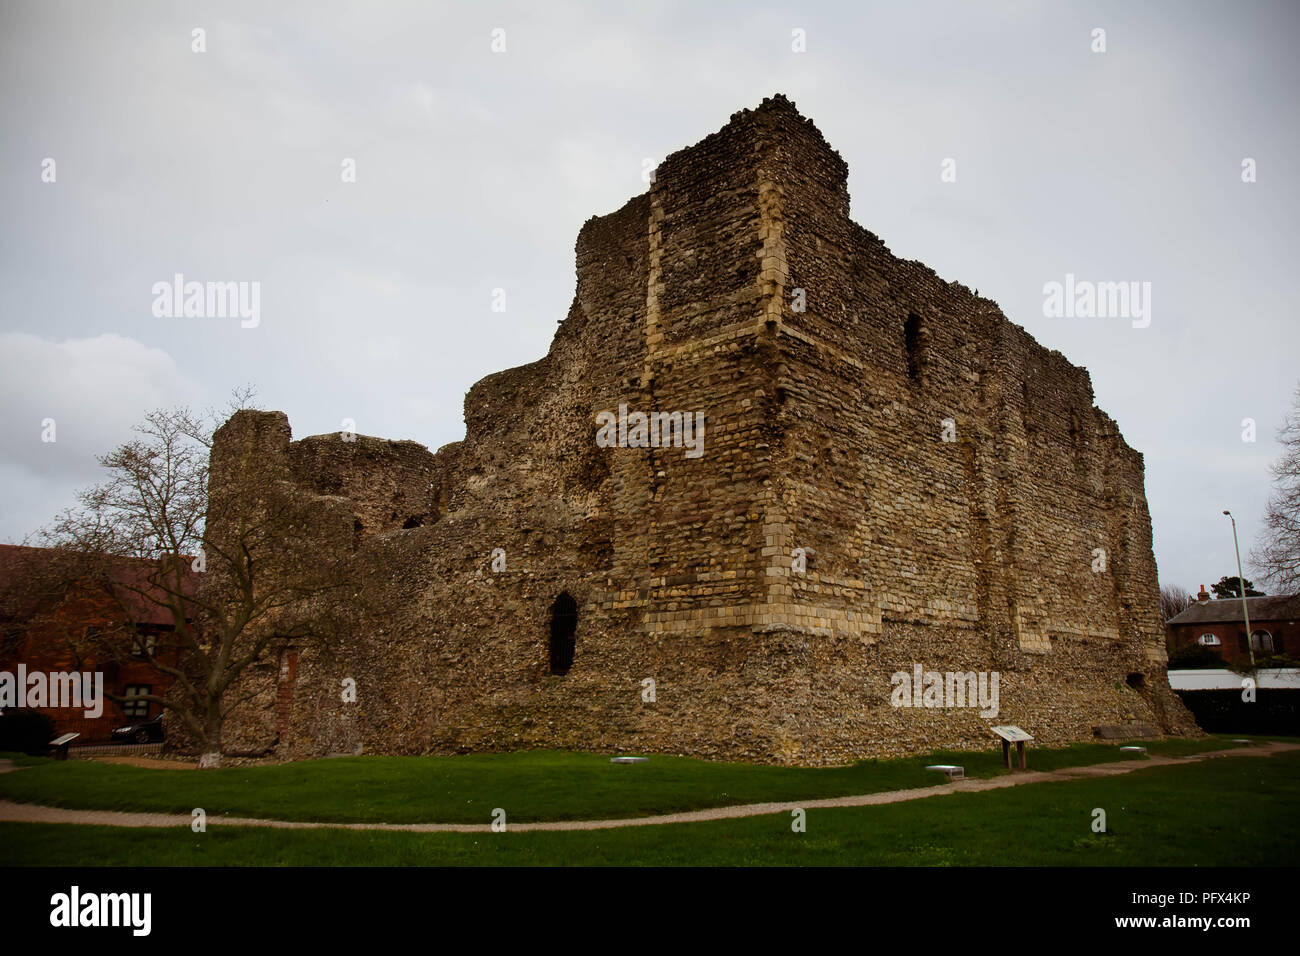 Décembre 2015 - les ruines de château de Canterbury, Kent, Royaume-Uni ; l'un des premiers châteaux fondé par Guillaume le Conquérant après l'invasion de l'Angleterre en 1066 Banque D'Images